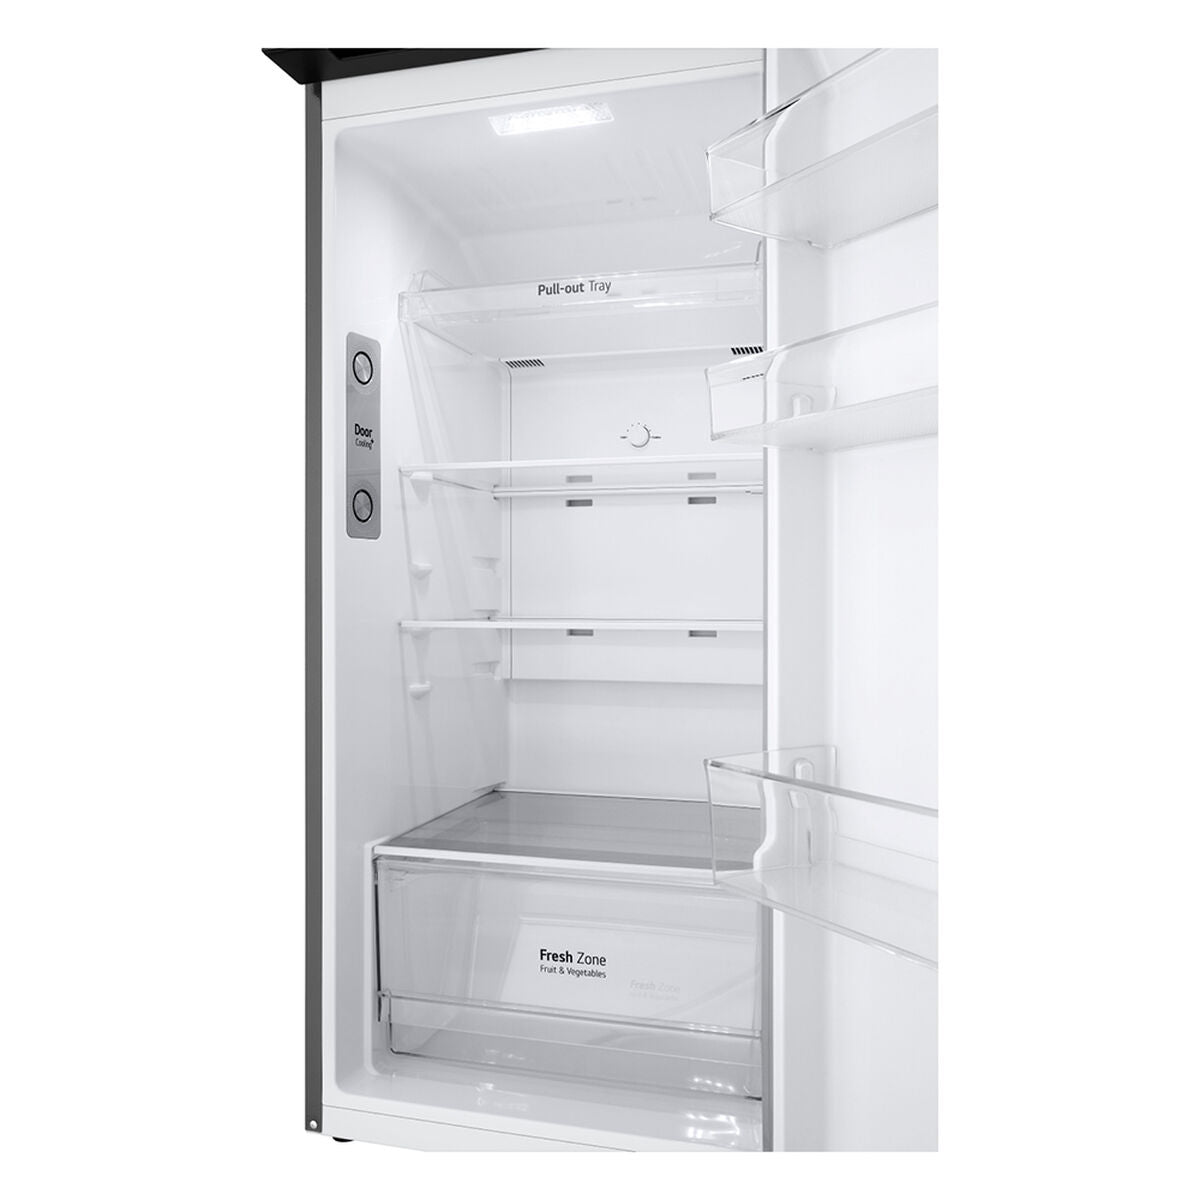 Refrigerador Lg Vt27Bpp Gris 204 Lts [Openbox][wall]